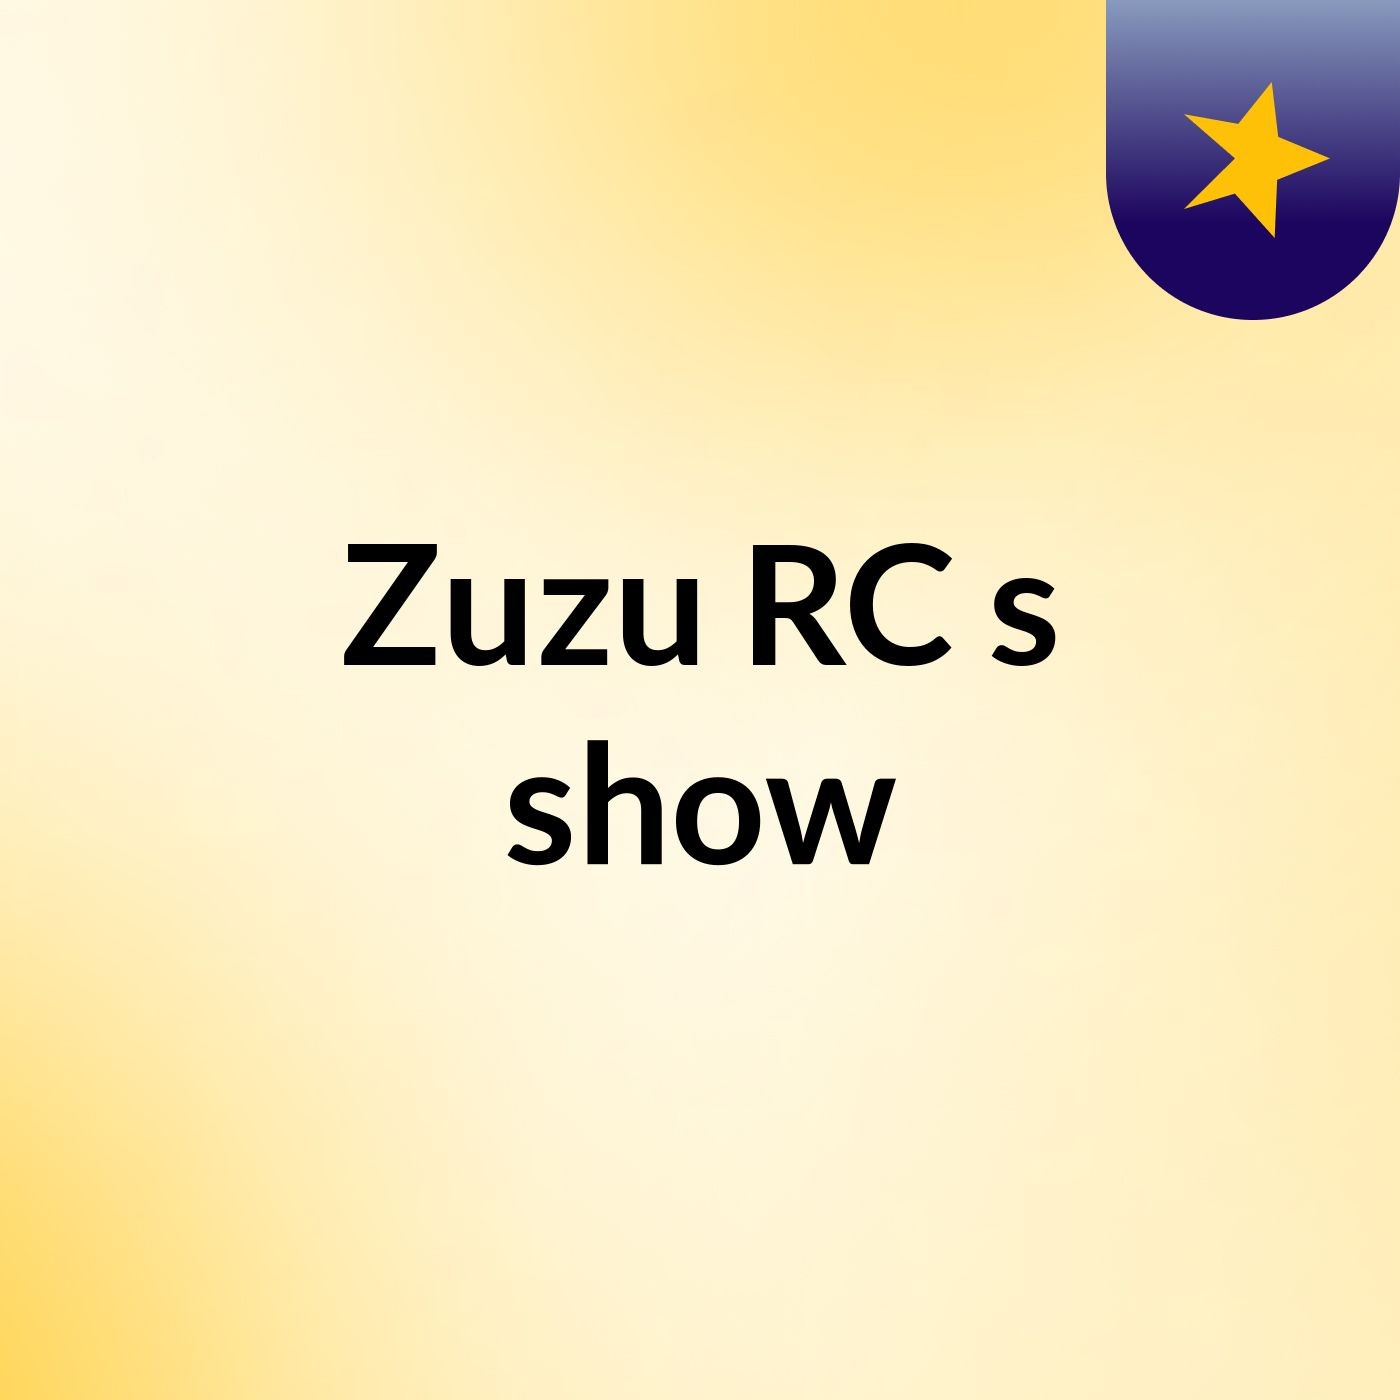 Zuzu RC's show